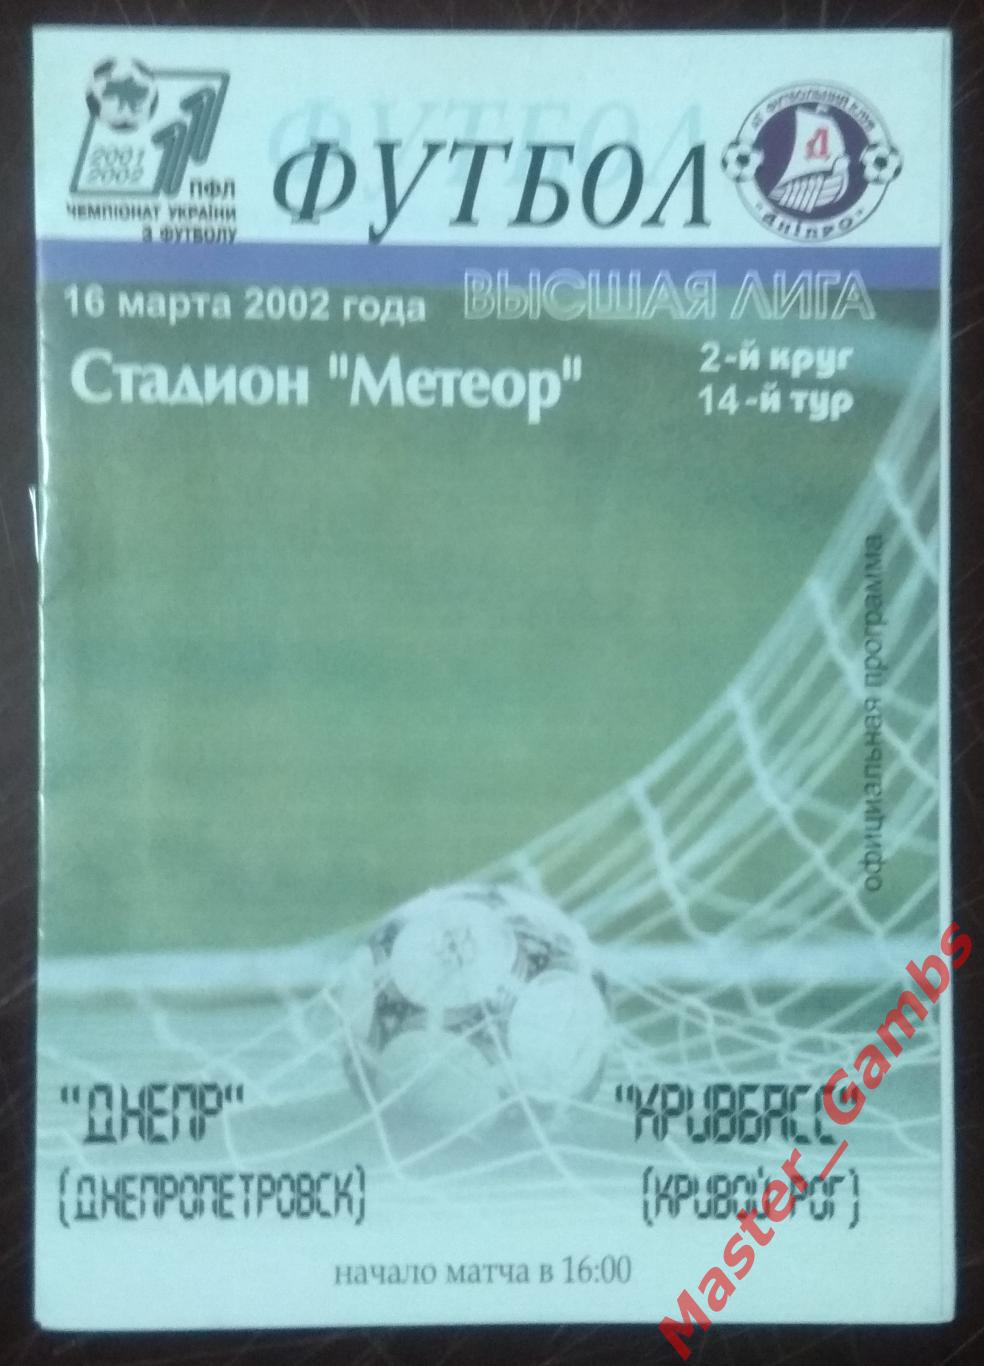 Днепропетровск - Кривбасс Кривой Рог 2001/2002*